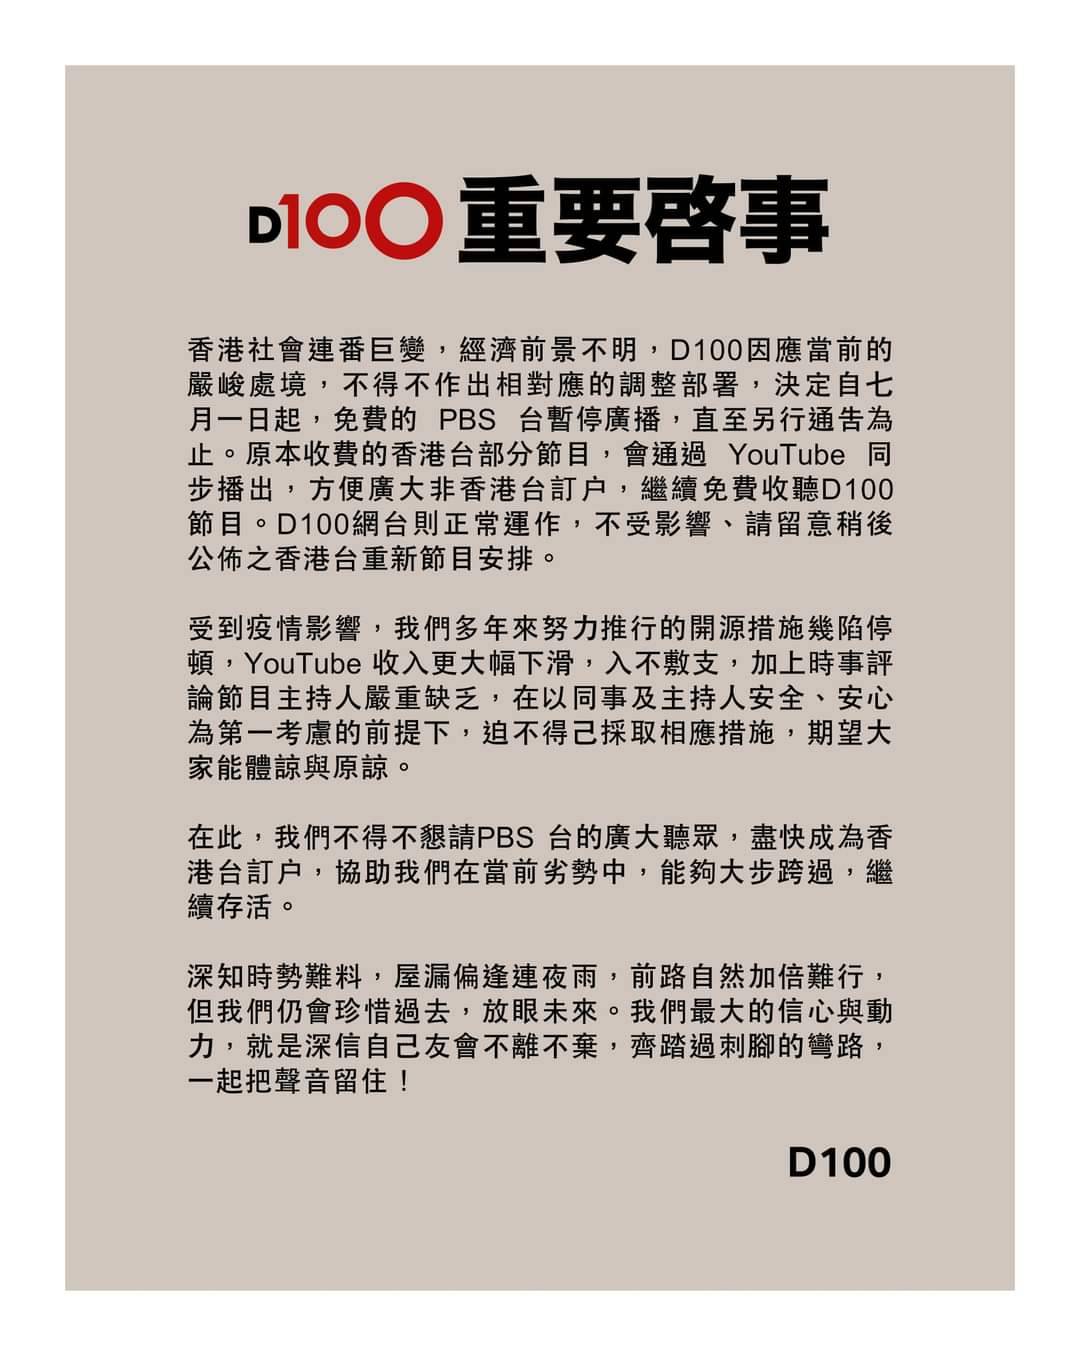 憂成下一個蘋果 香港媒體D100旗下廣播台被迫暫停